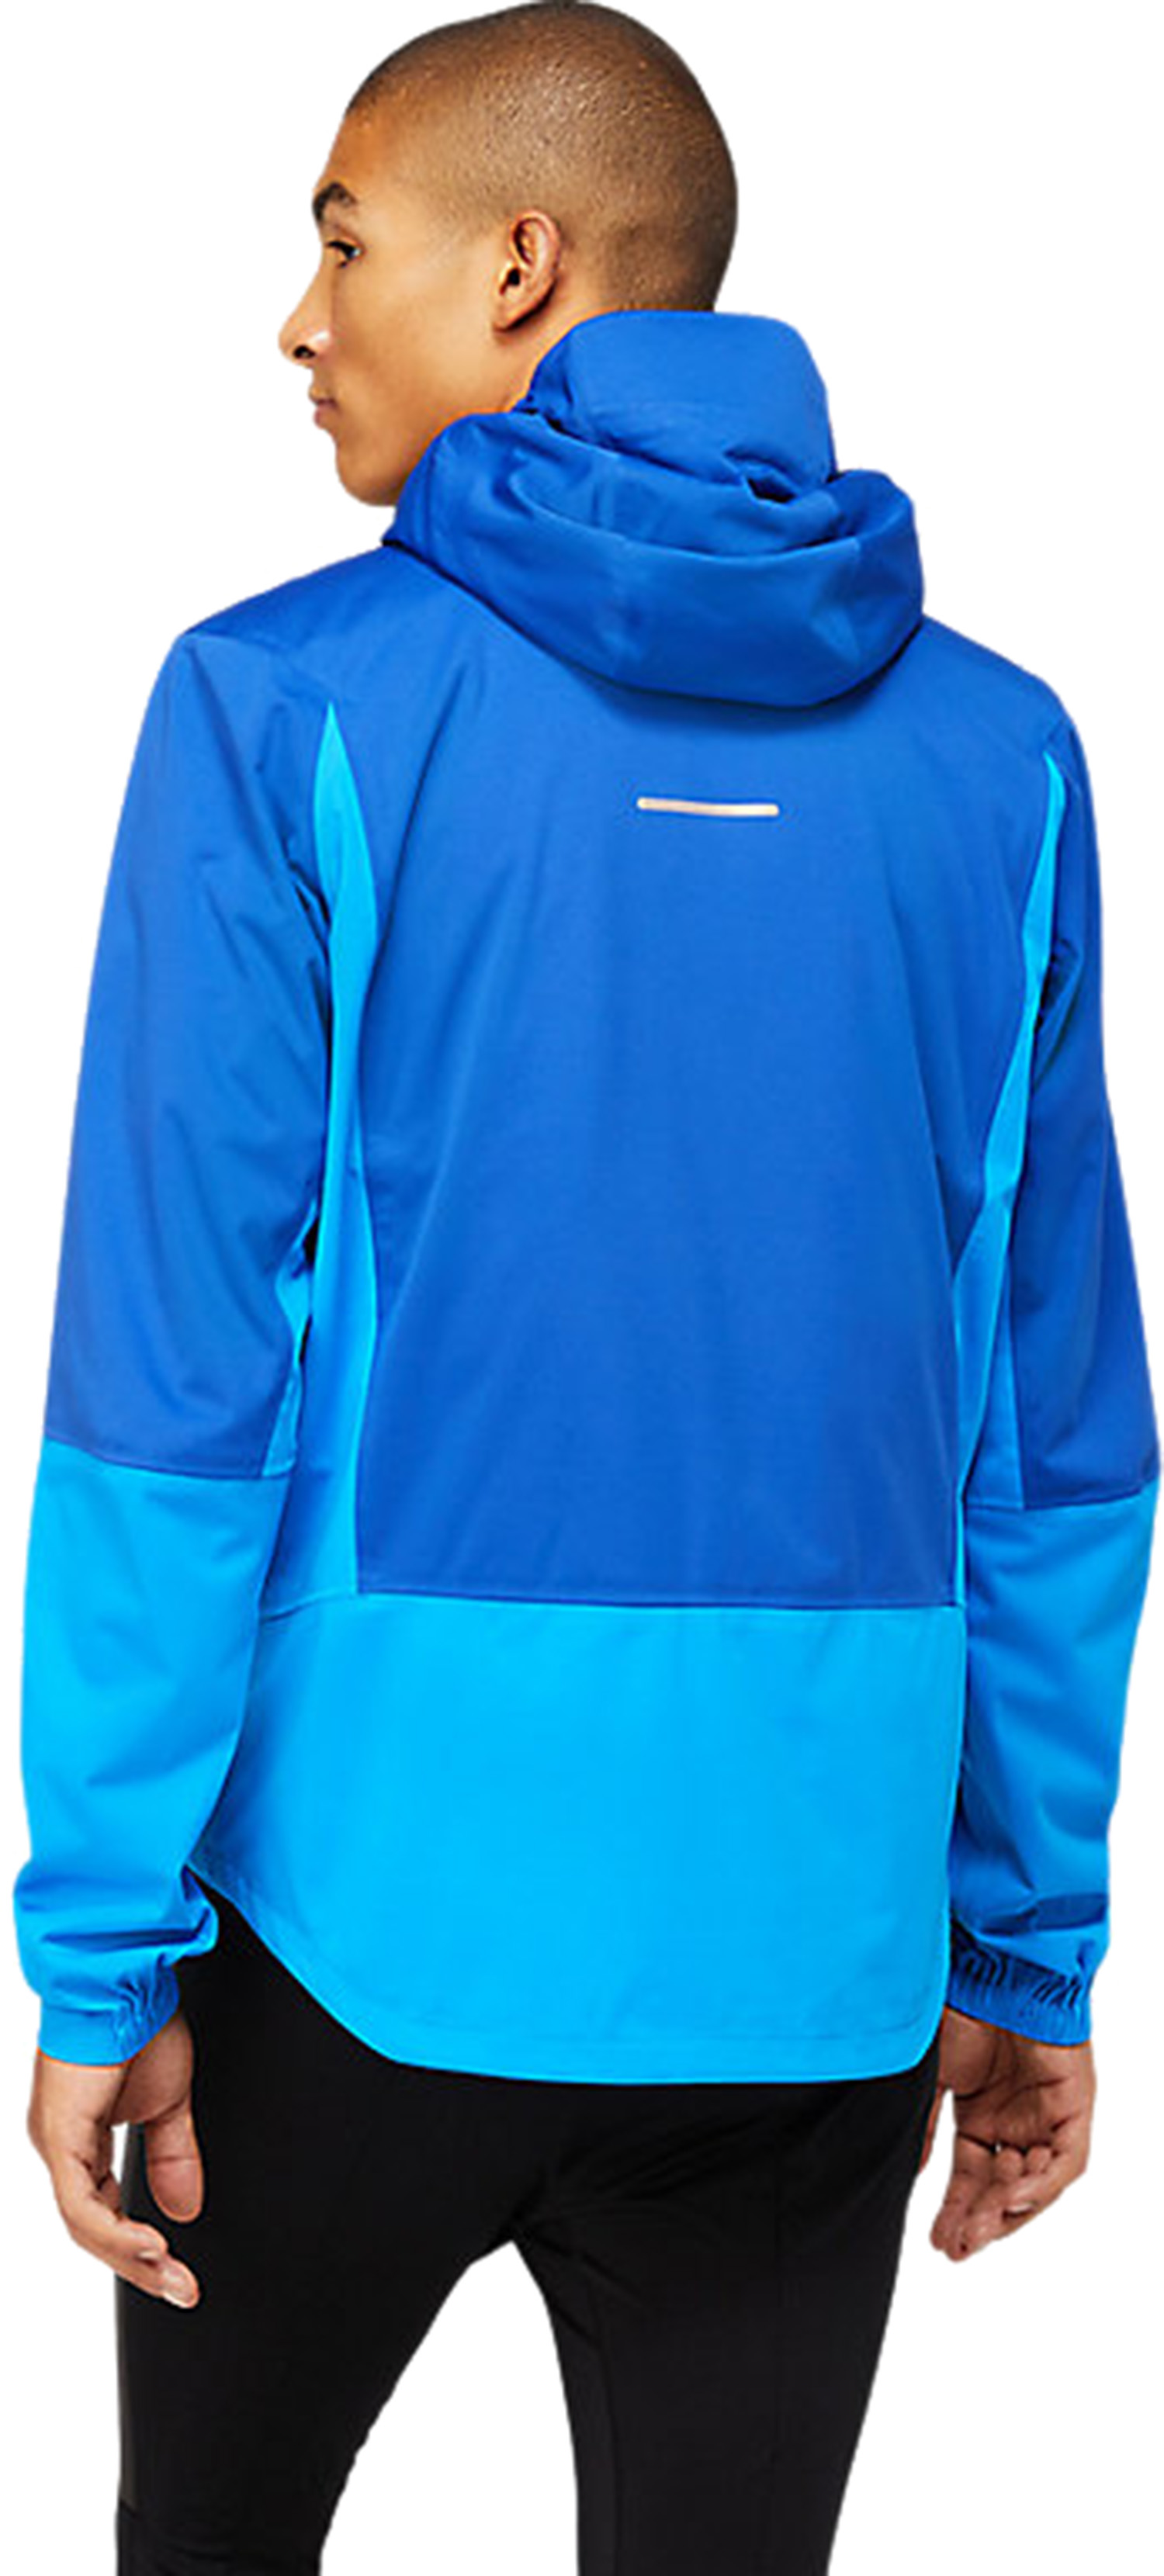 Куртка беговая Asics Winter Accelerate Jacket Monaco Blue/Electric Blue